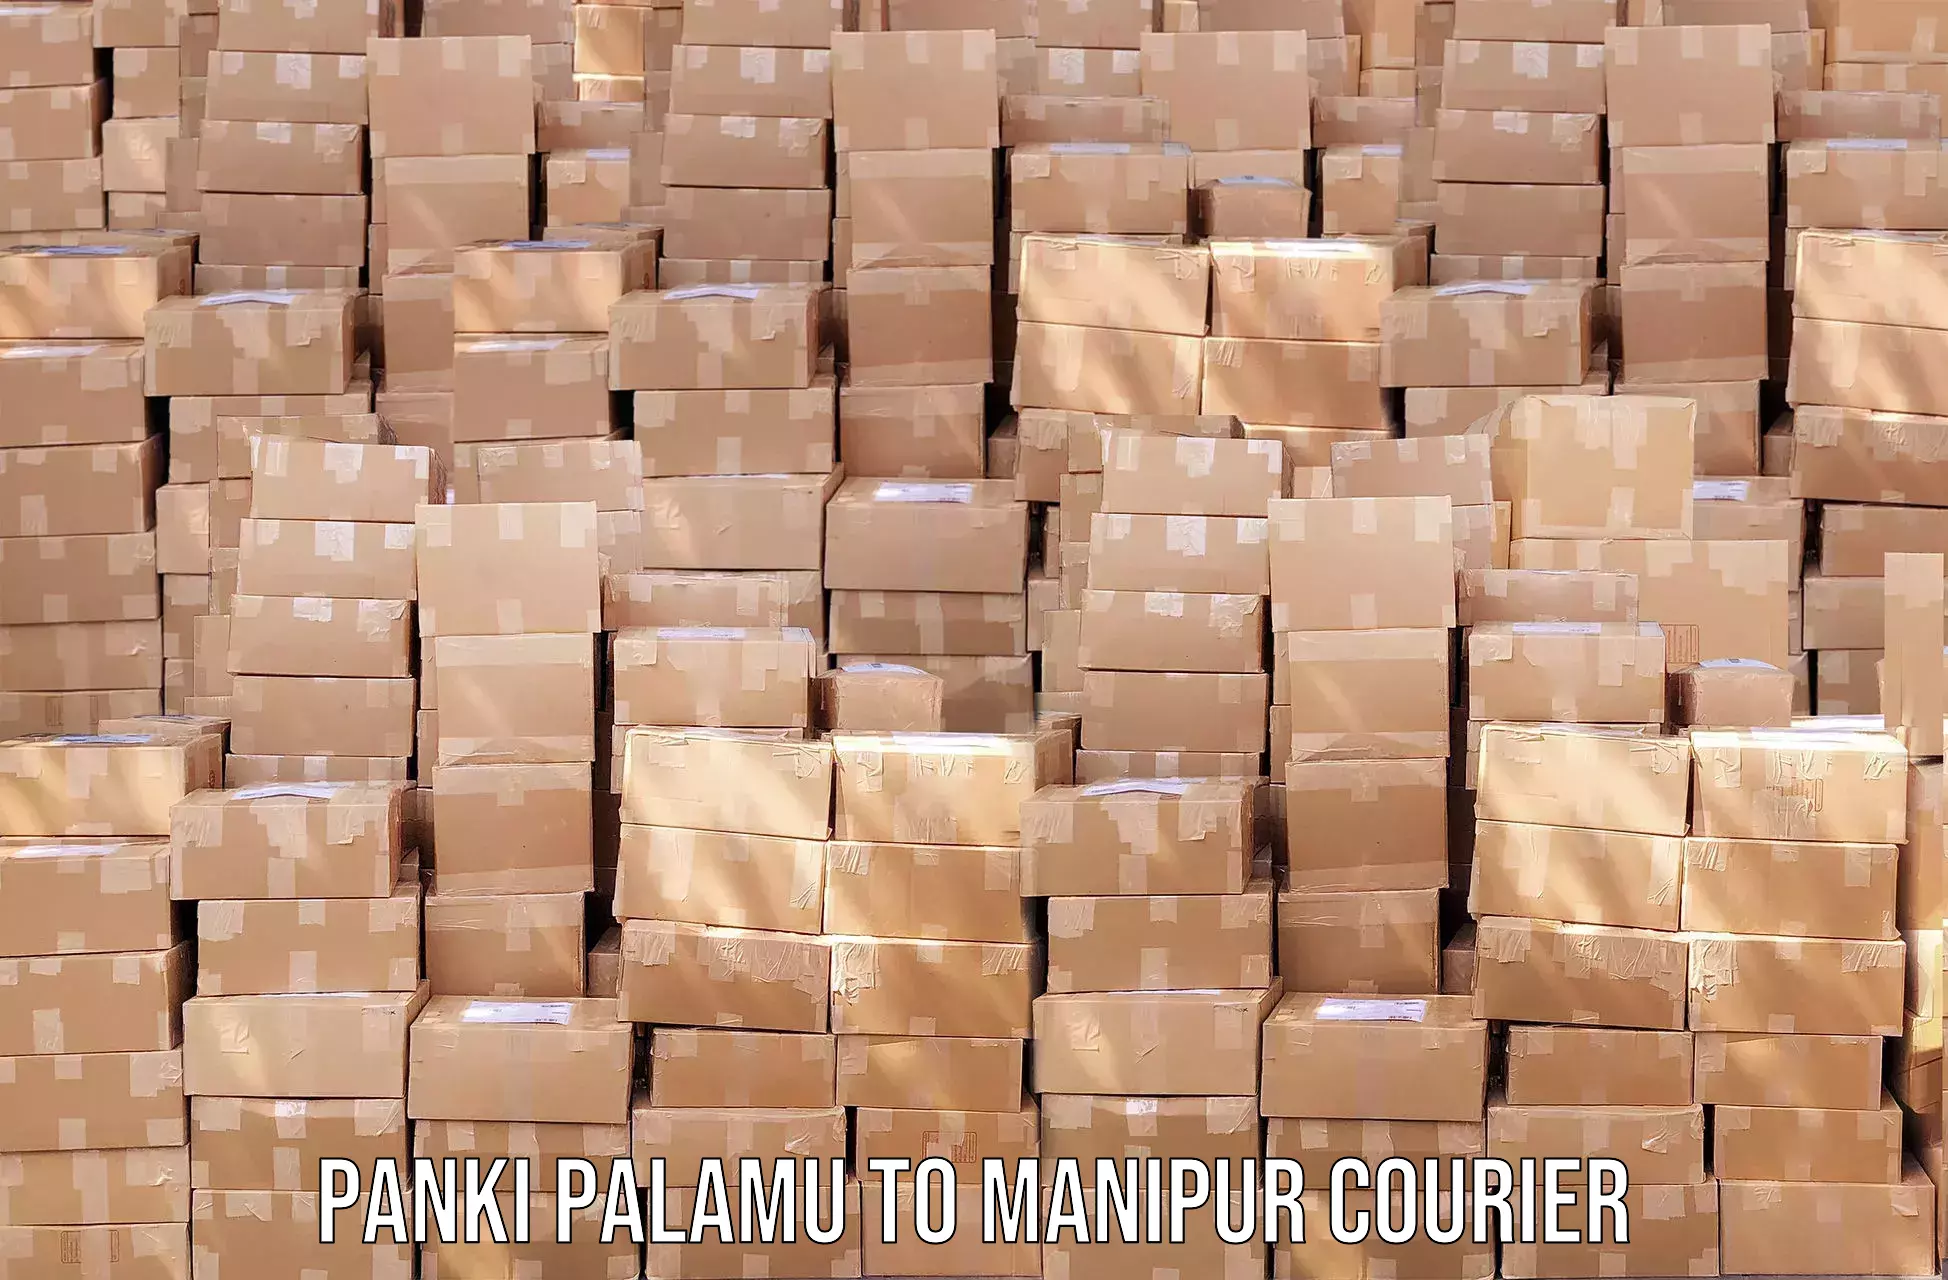 Advanced tracking systems Panki Palamu to Manipur